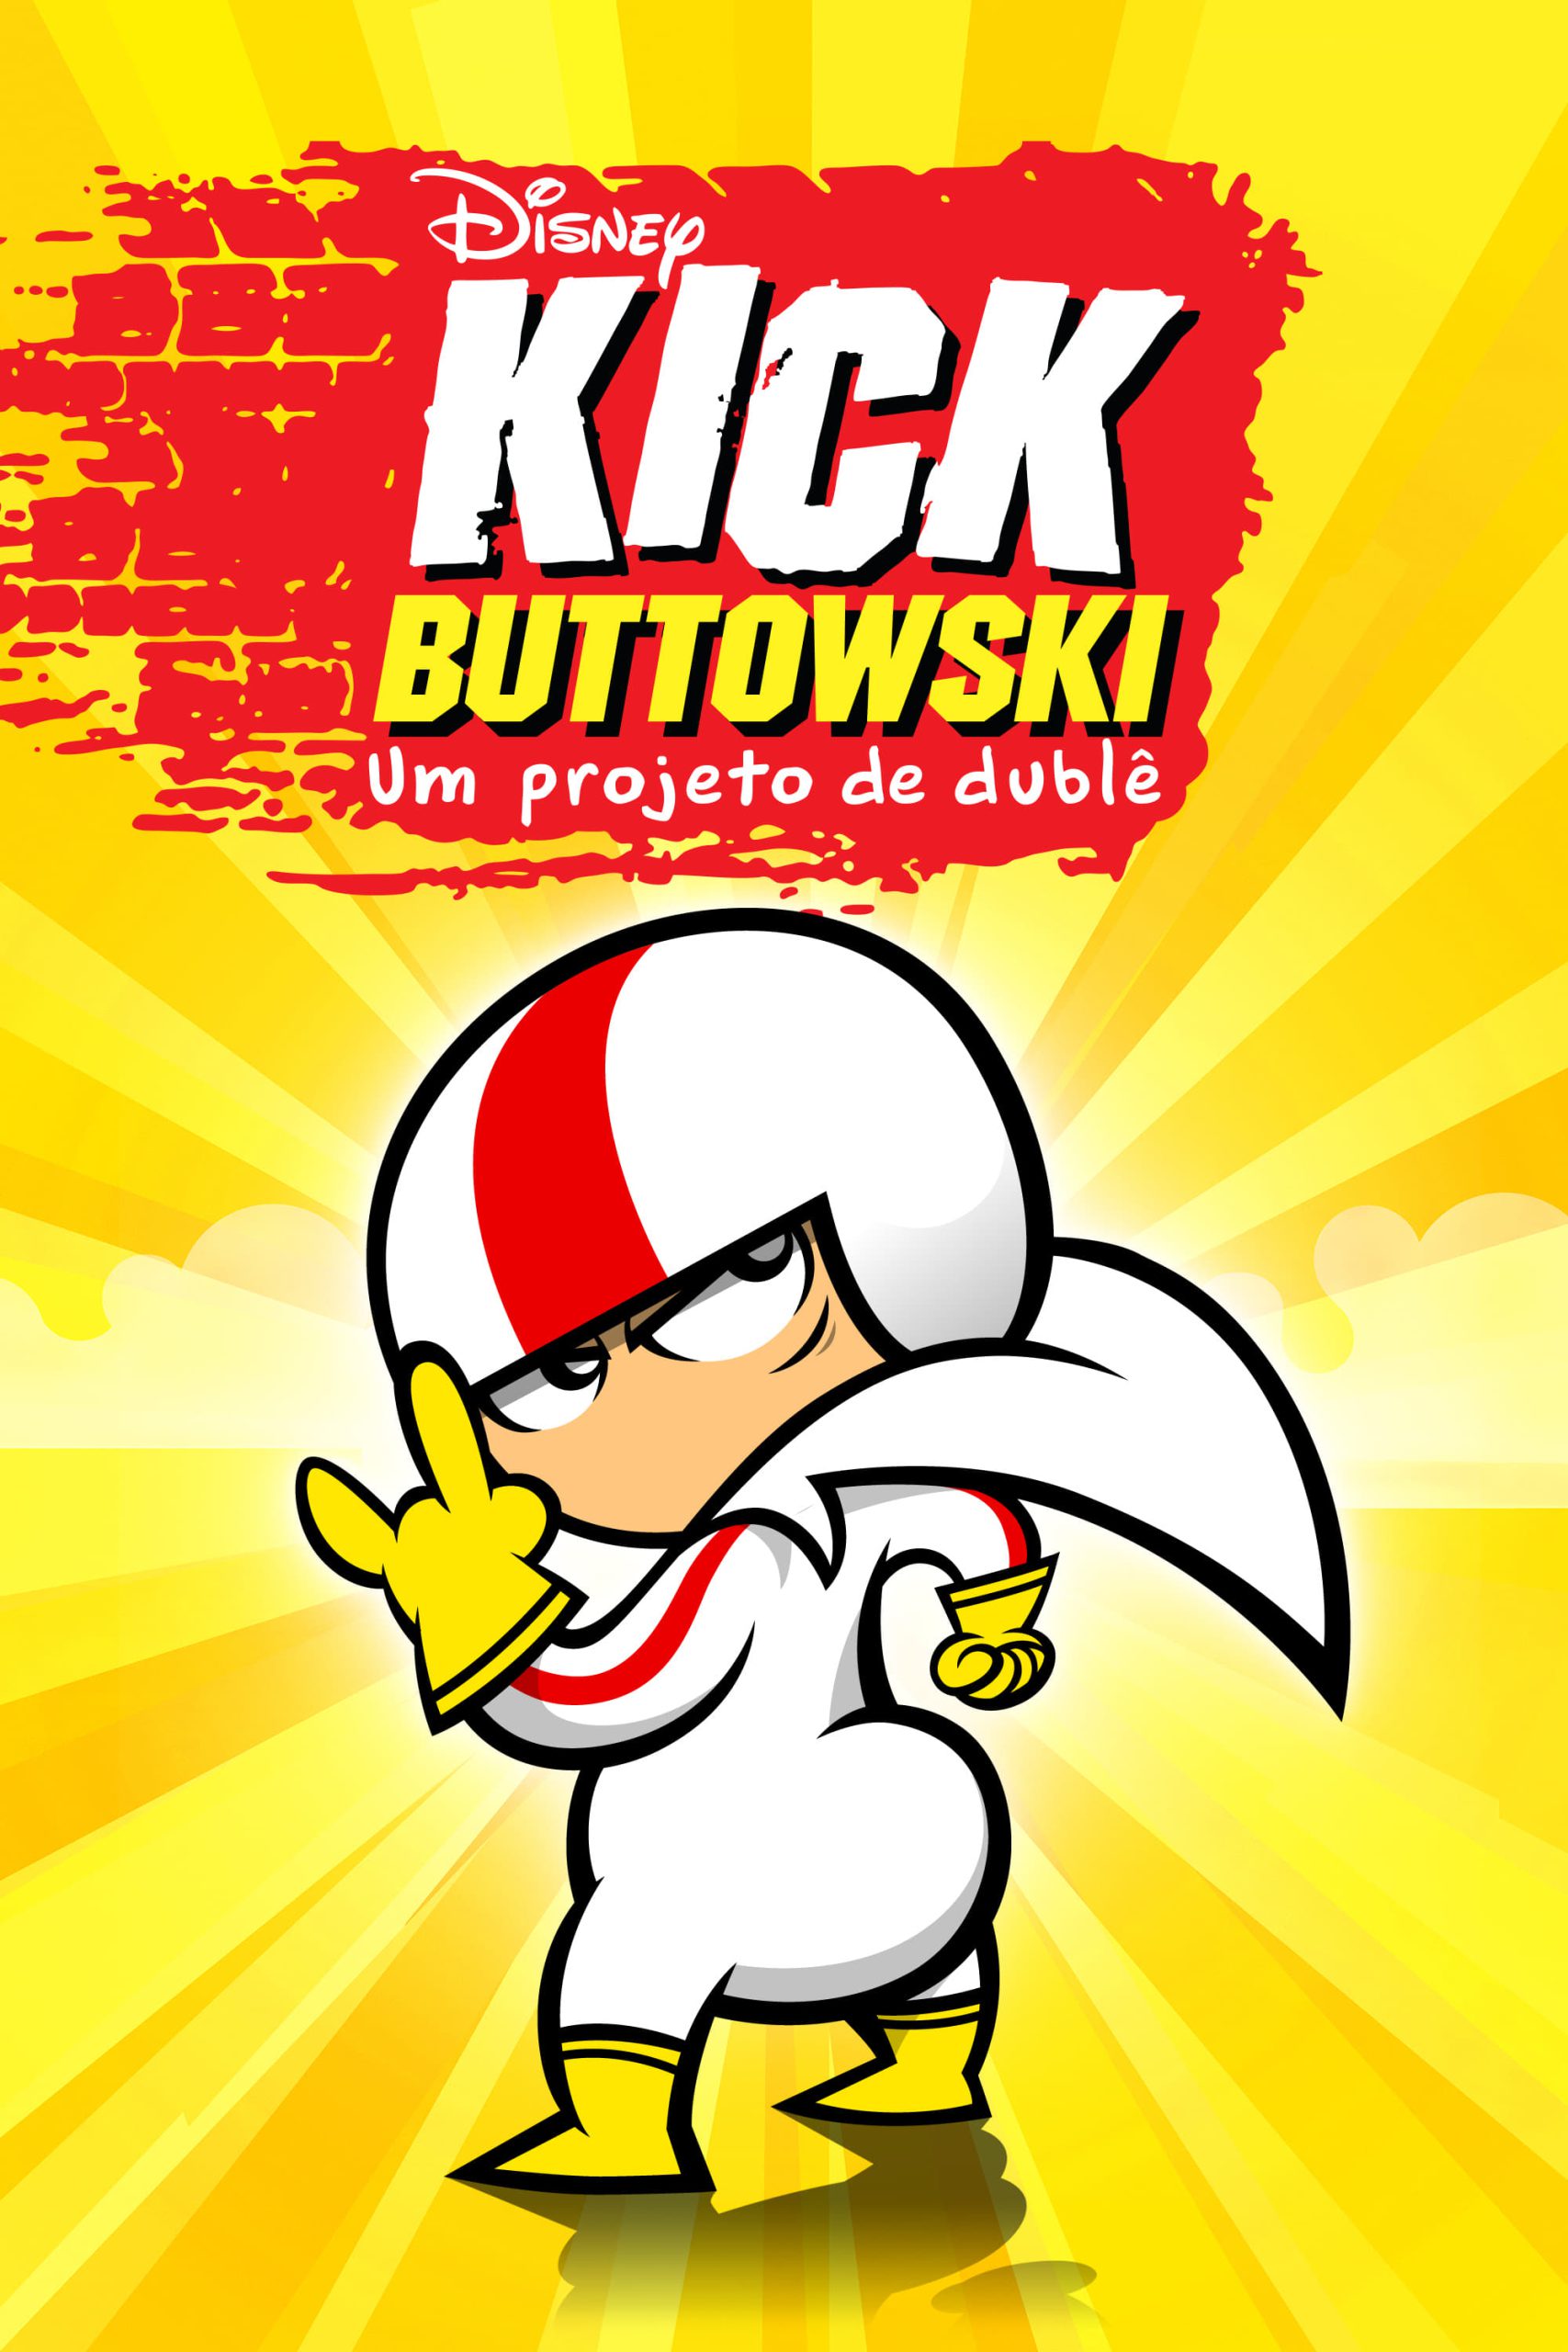 Kick Buttowski: Um Projeto de Duble S2